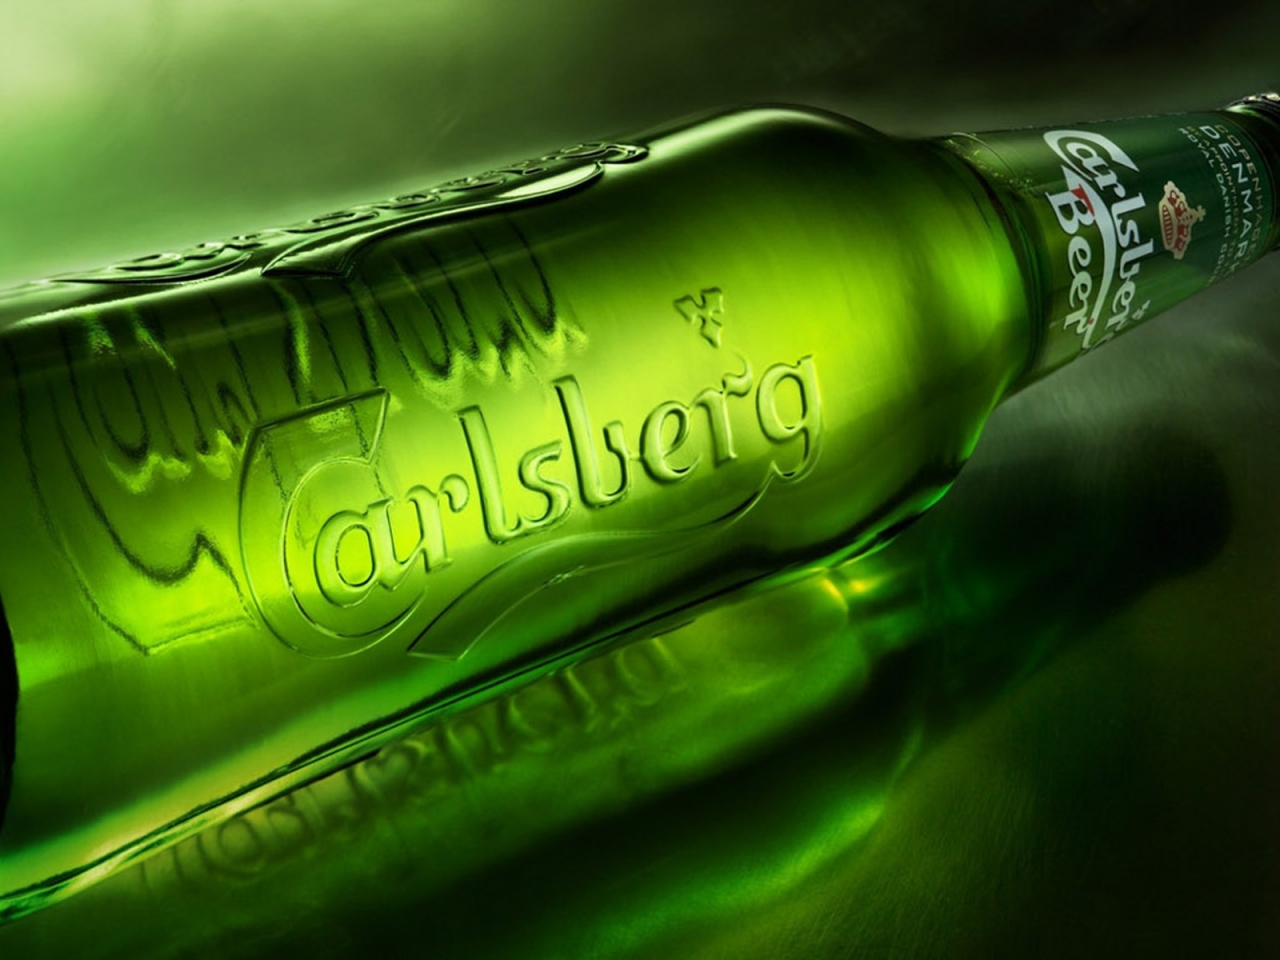 Carlsberg Bottle for 1280 x 960 resolution